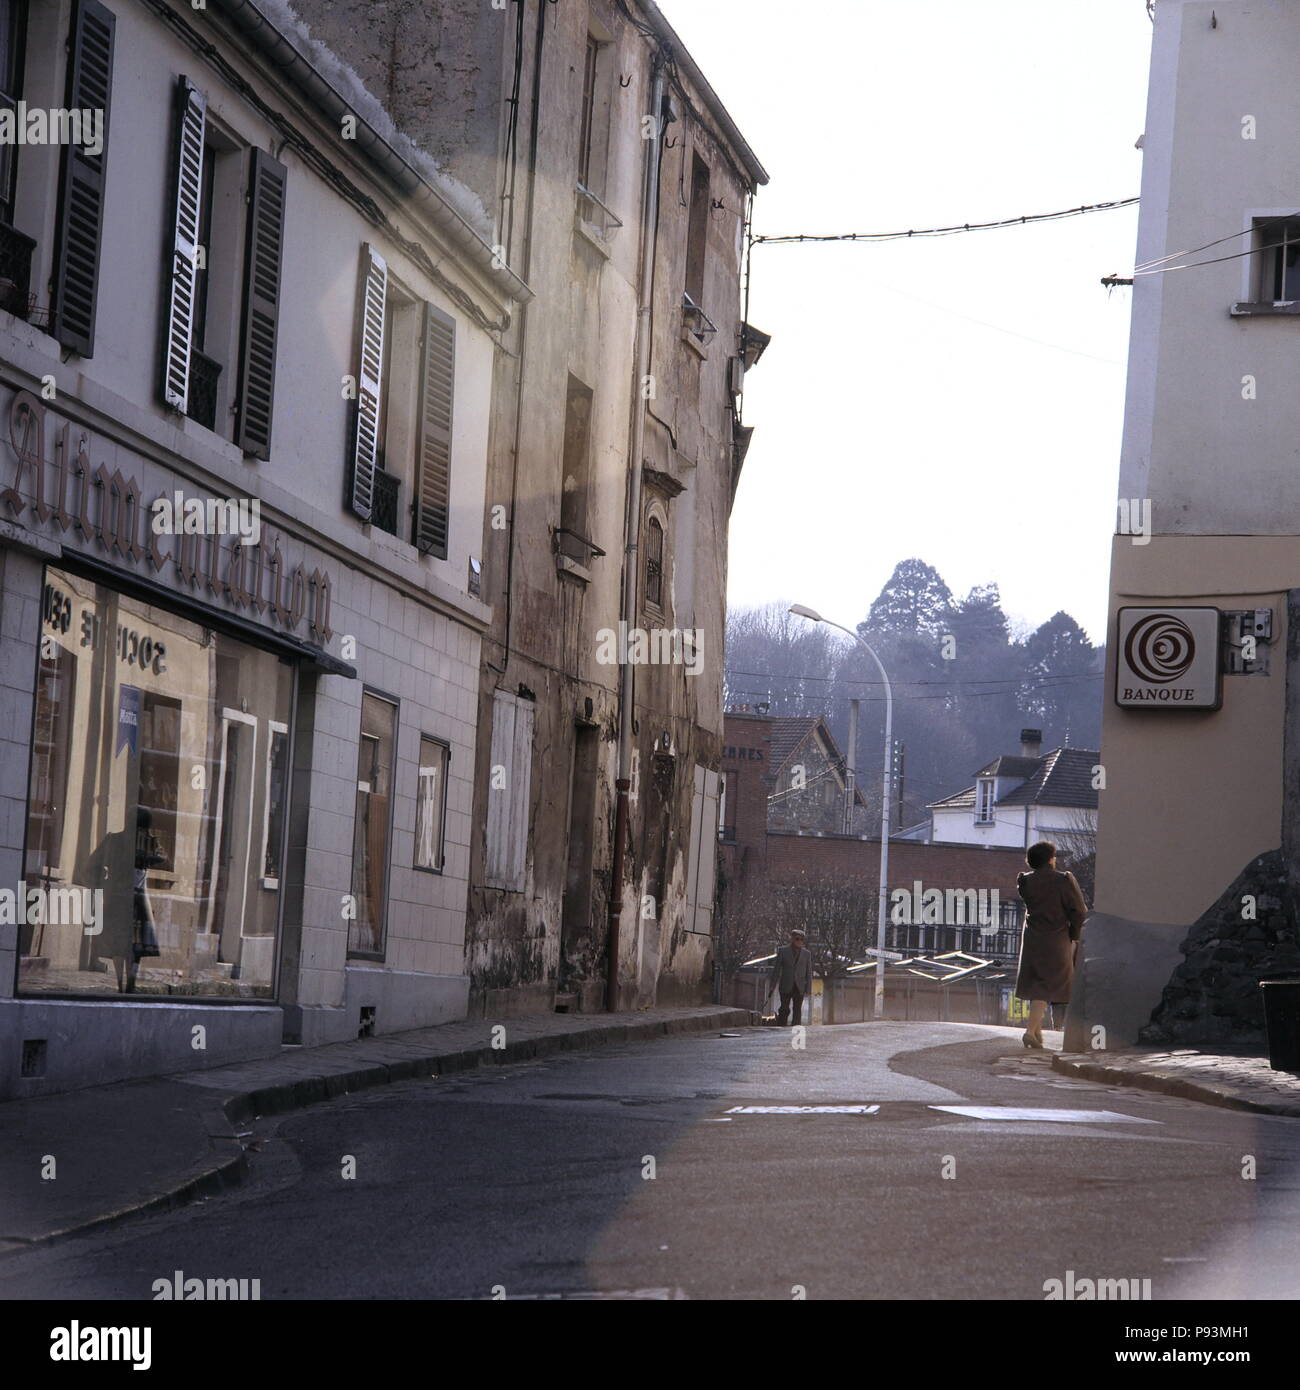 AJAXNETPHOTO. LOUVECIENNES, Francia. - Il vecchio villaggio sulla periferia di Parigi frequentato da artisti impressionisti del XIX secolo. Foto:JONATHAN EASTLAND/AJAX REF:85 9 Foto Stock